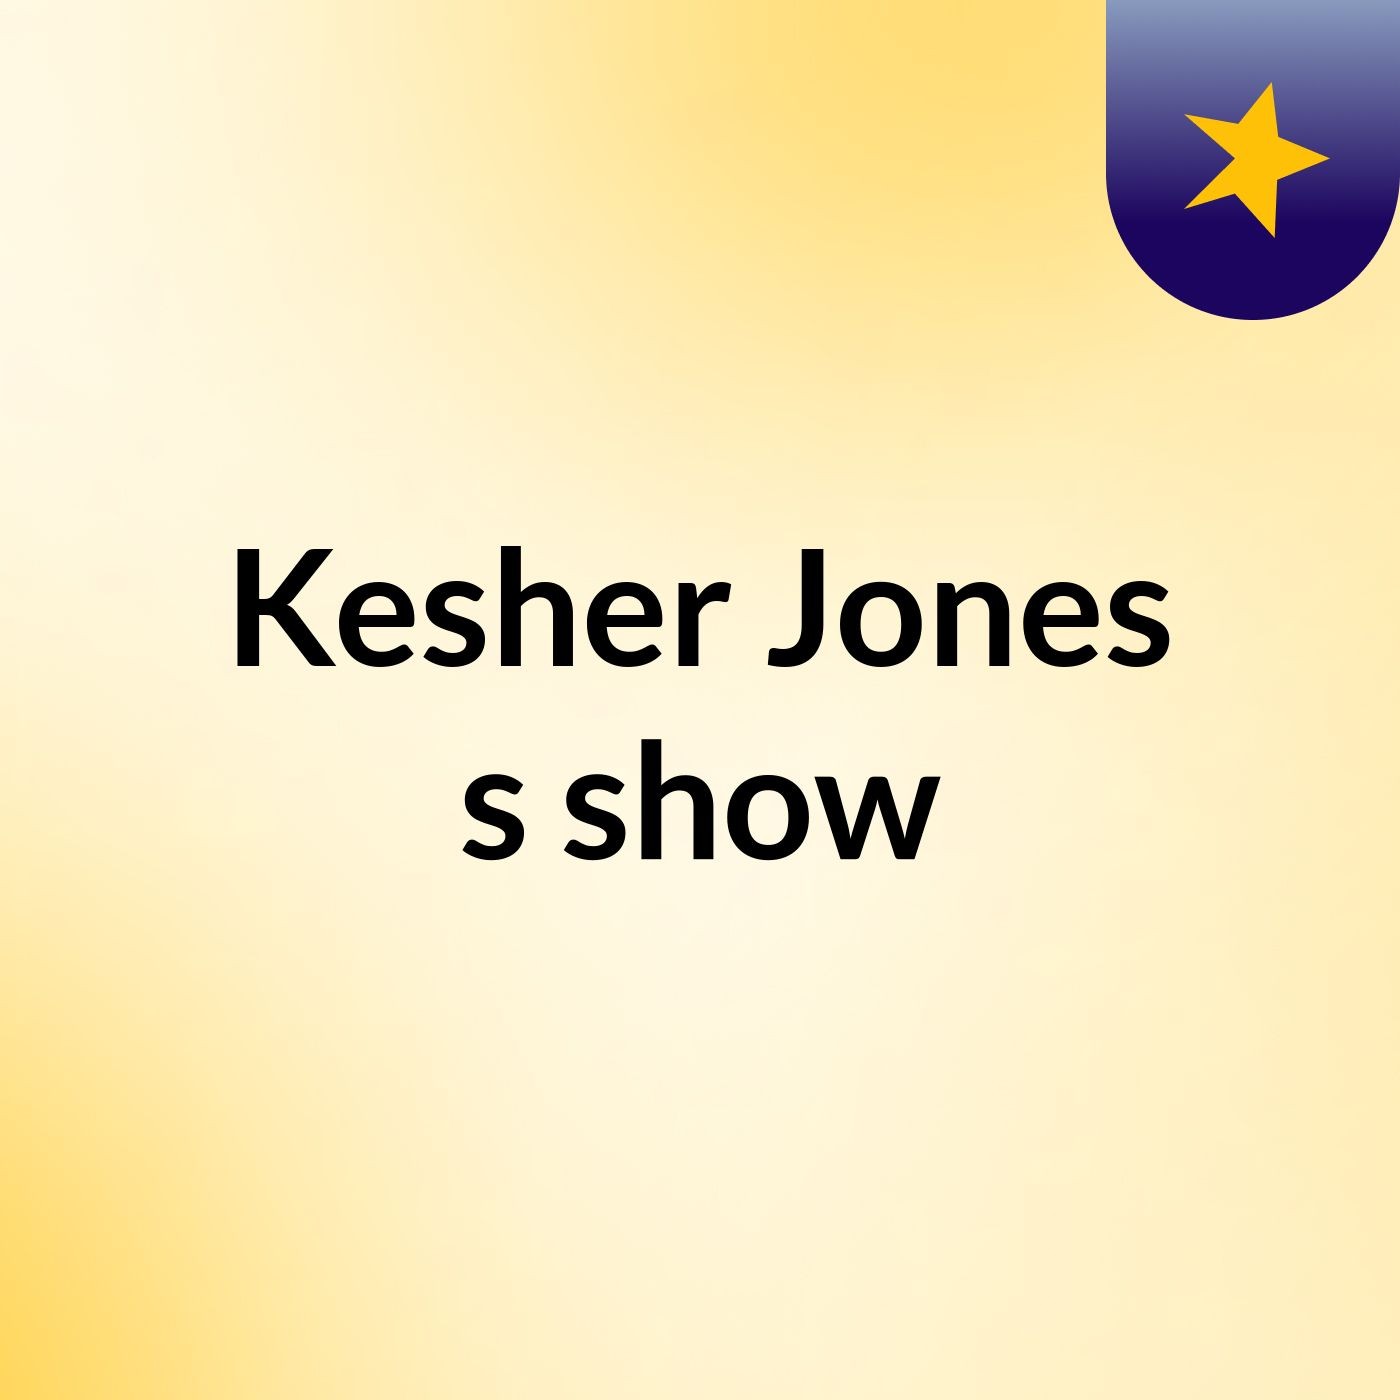 Kesher Jones's show